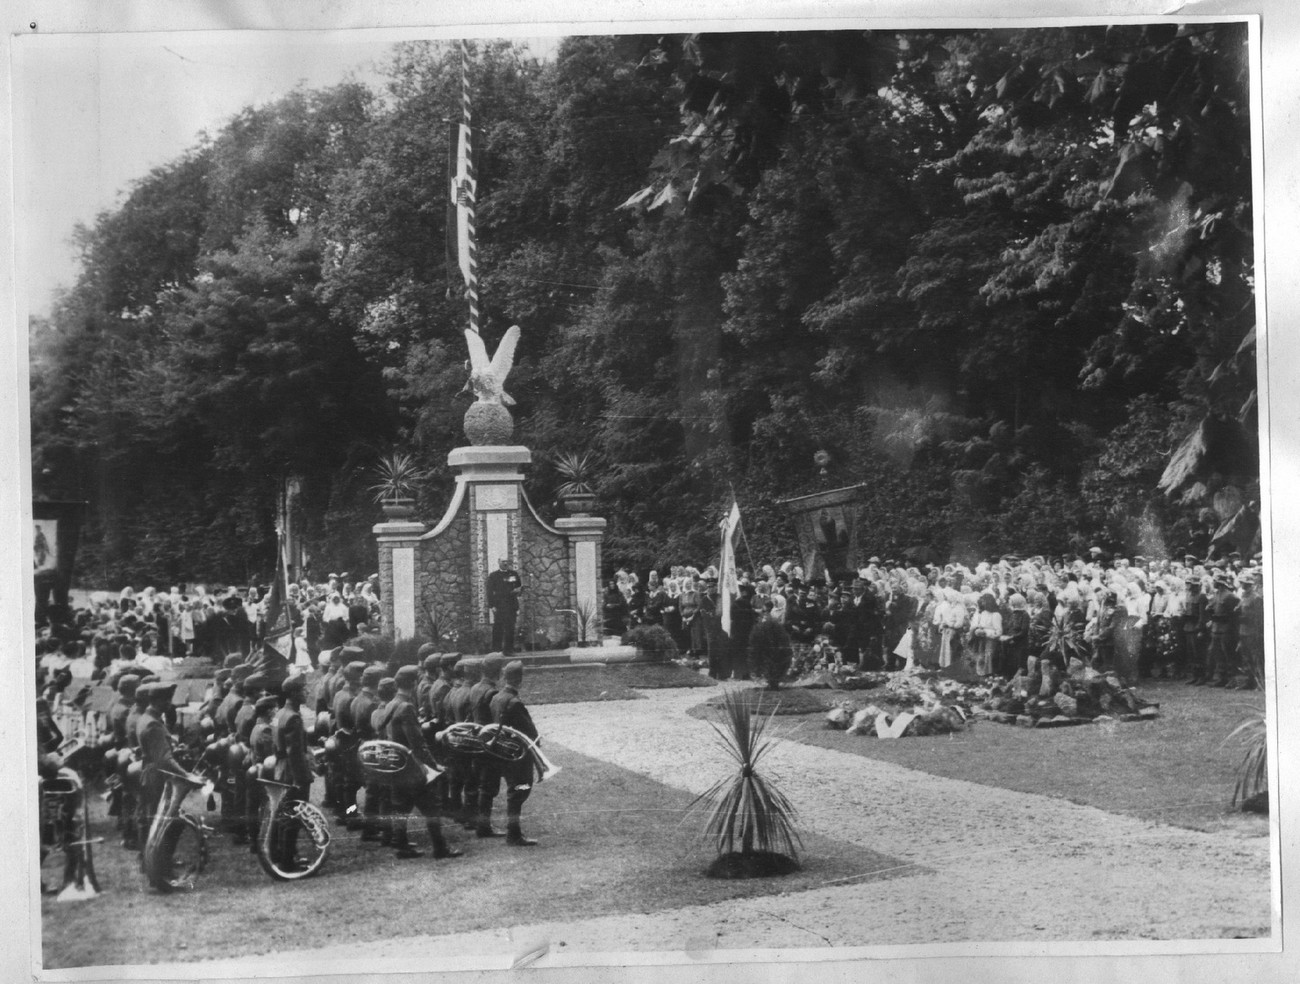 Madžarska oblast je v številnih krajih v Prekmurju postavila t. i. Državne zastave (Országzászló), s čimer so želeli tudi simbolično izraziti priključitev Prekmurja k Madžarski. Na fotografiji svečanost ob posvetitvi Országzászló v Beltincih leta 1942. Göncz, Felszabadulás vagy megszállás. MNMI, 105.